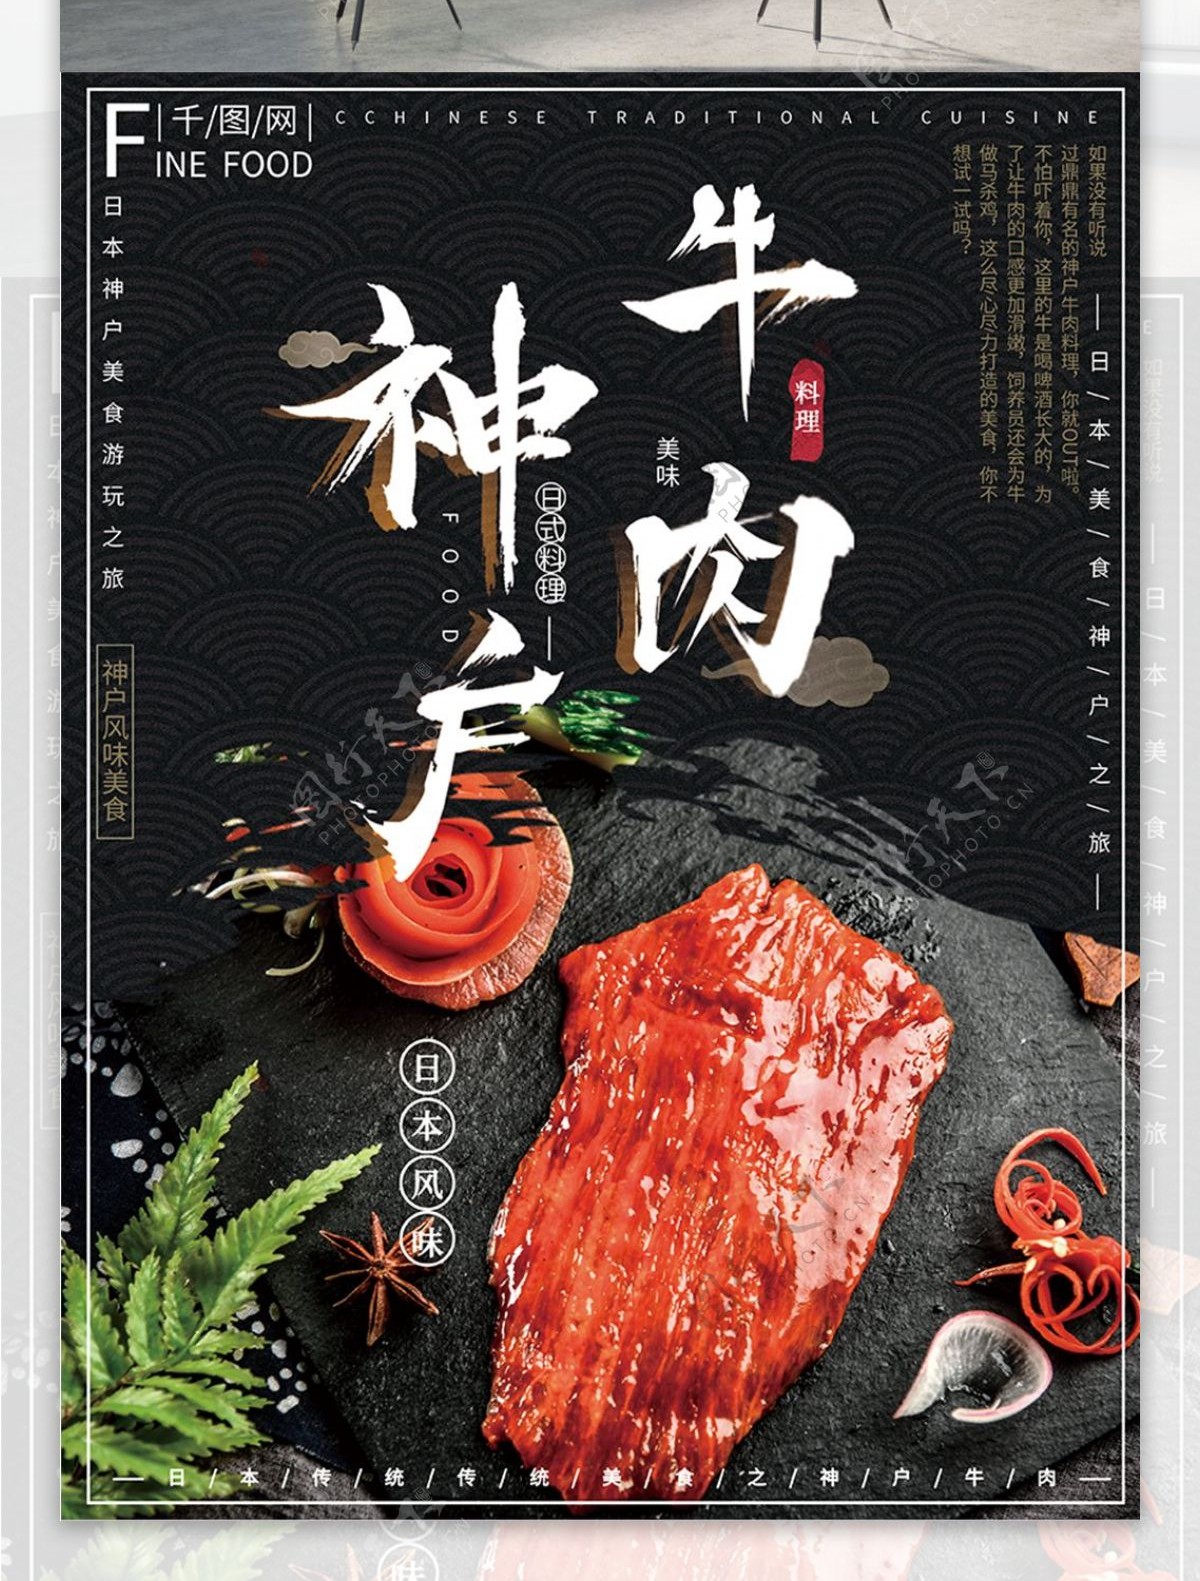 简约风日本游玩美食之旅神户牛肉美食海报